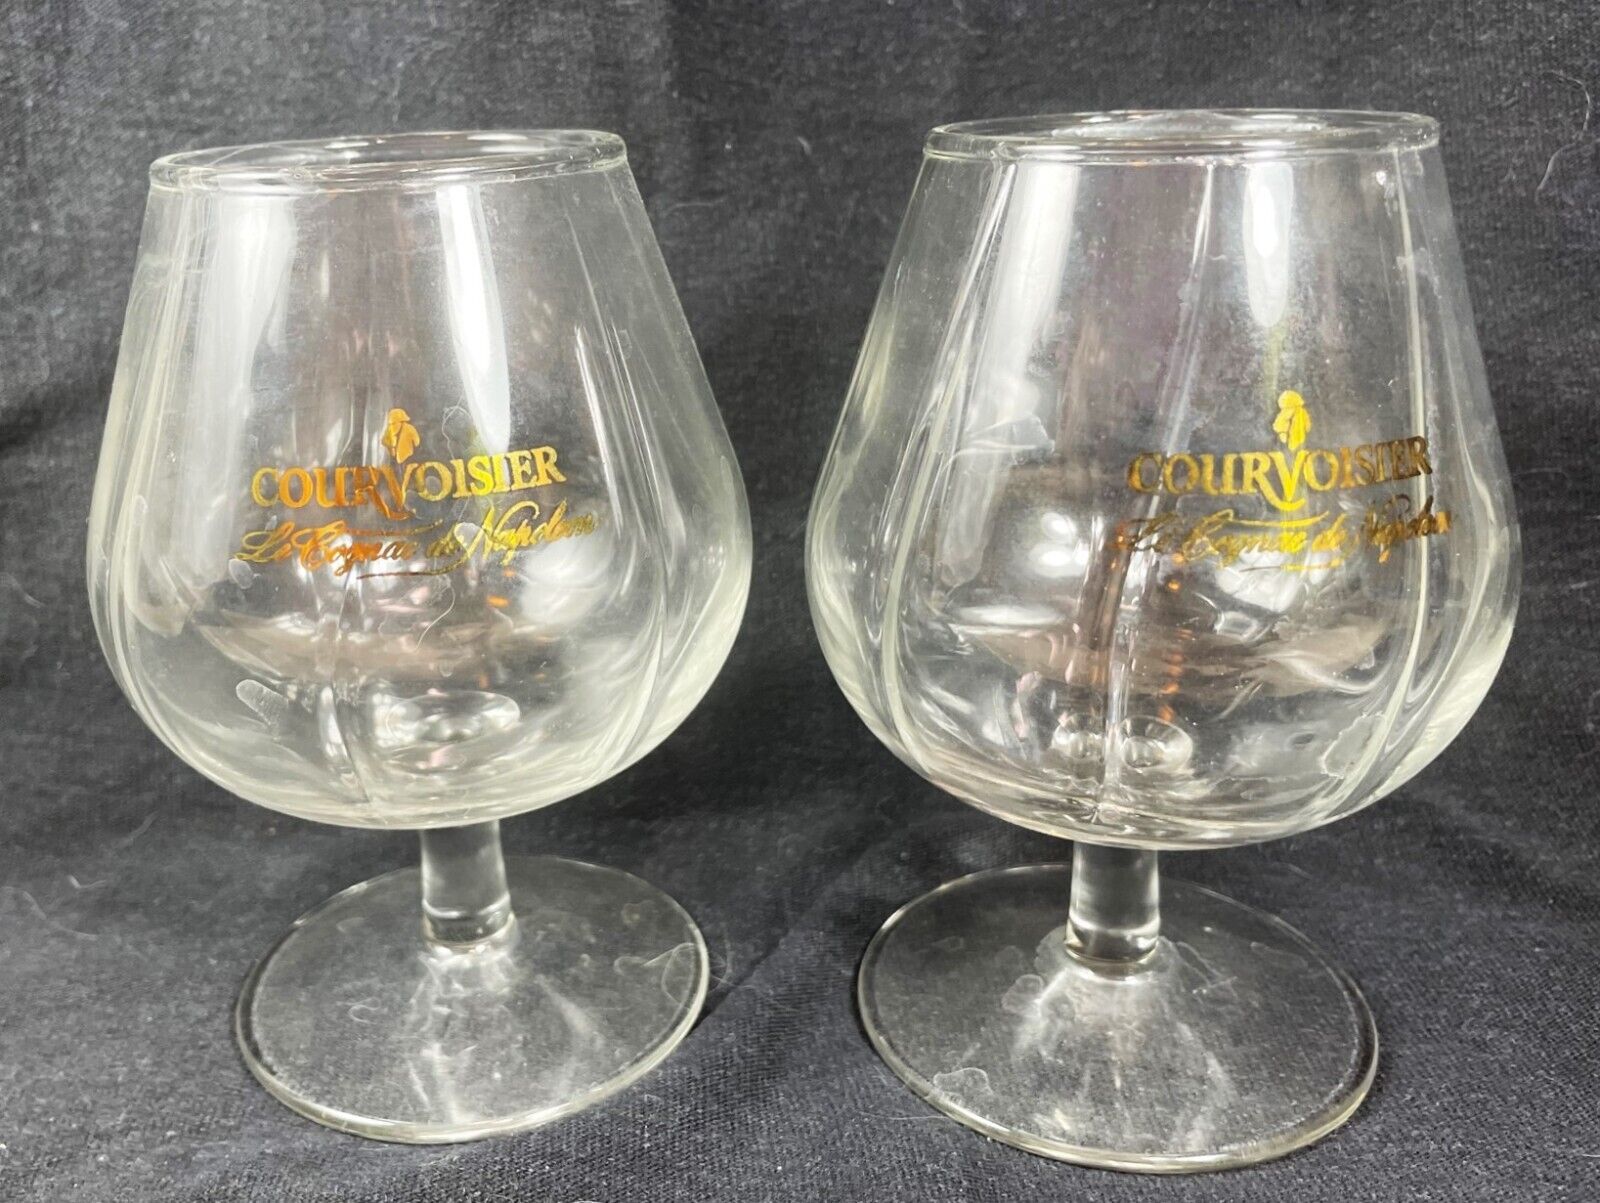 Courvoisier Le Cognac De Napoleon Liquor Snifter Glass Barware 6 fl oz Set of 2